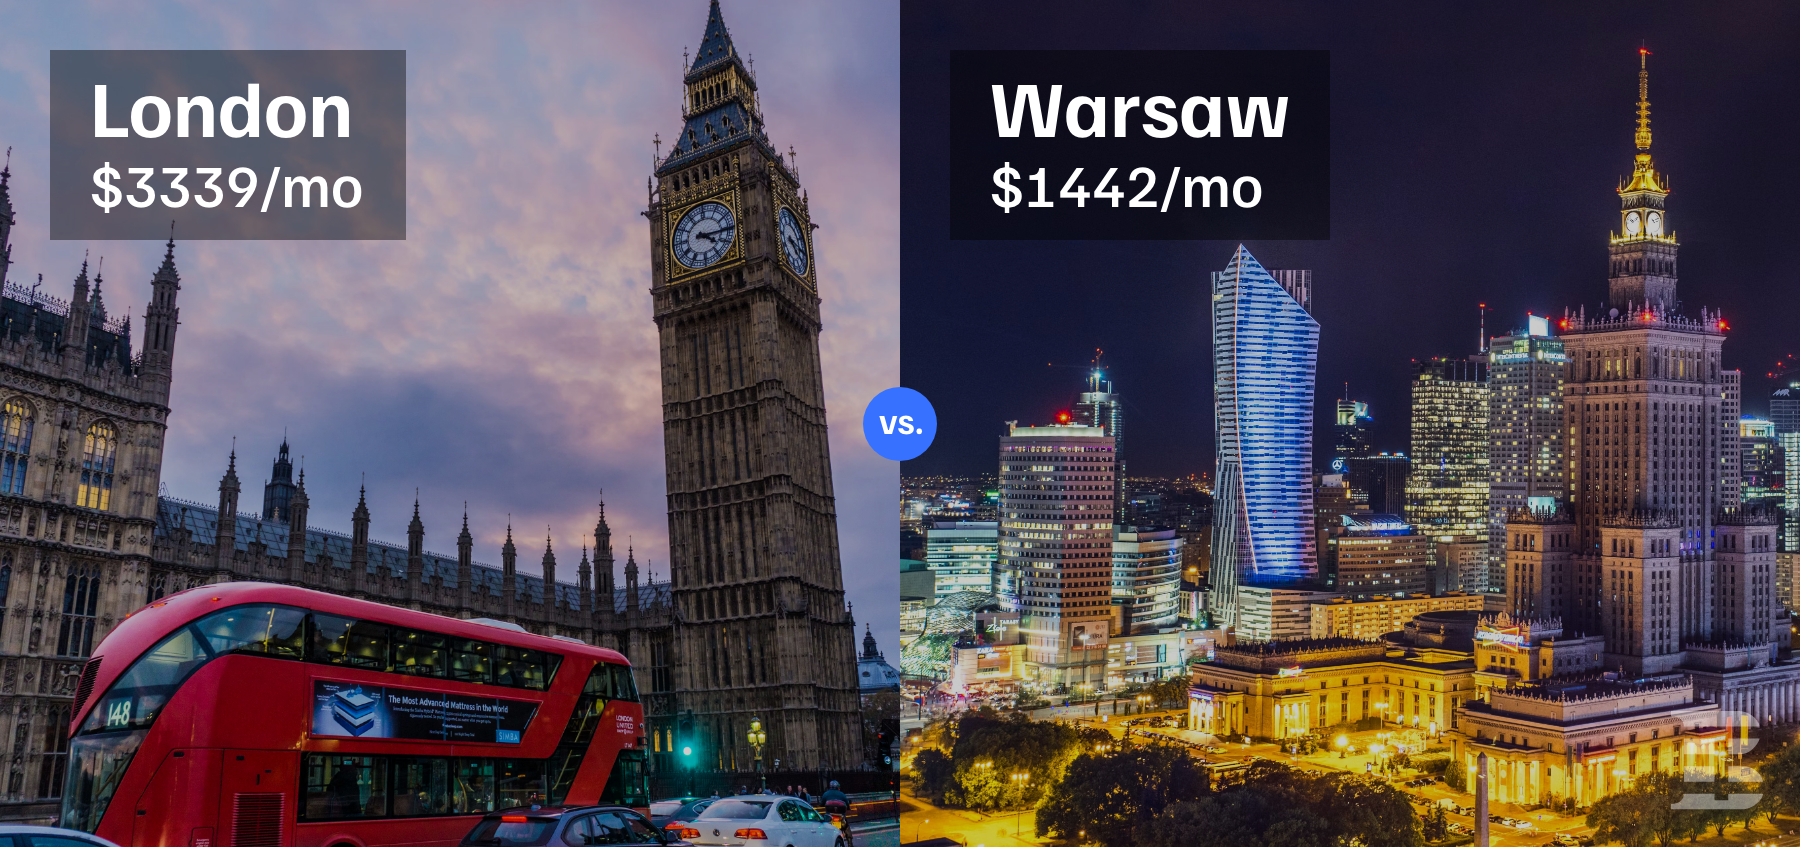 london vs Warsaw 